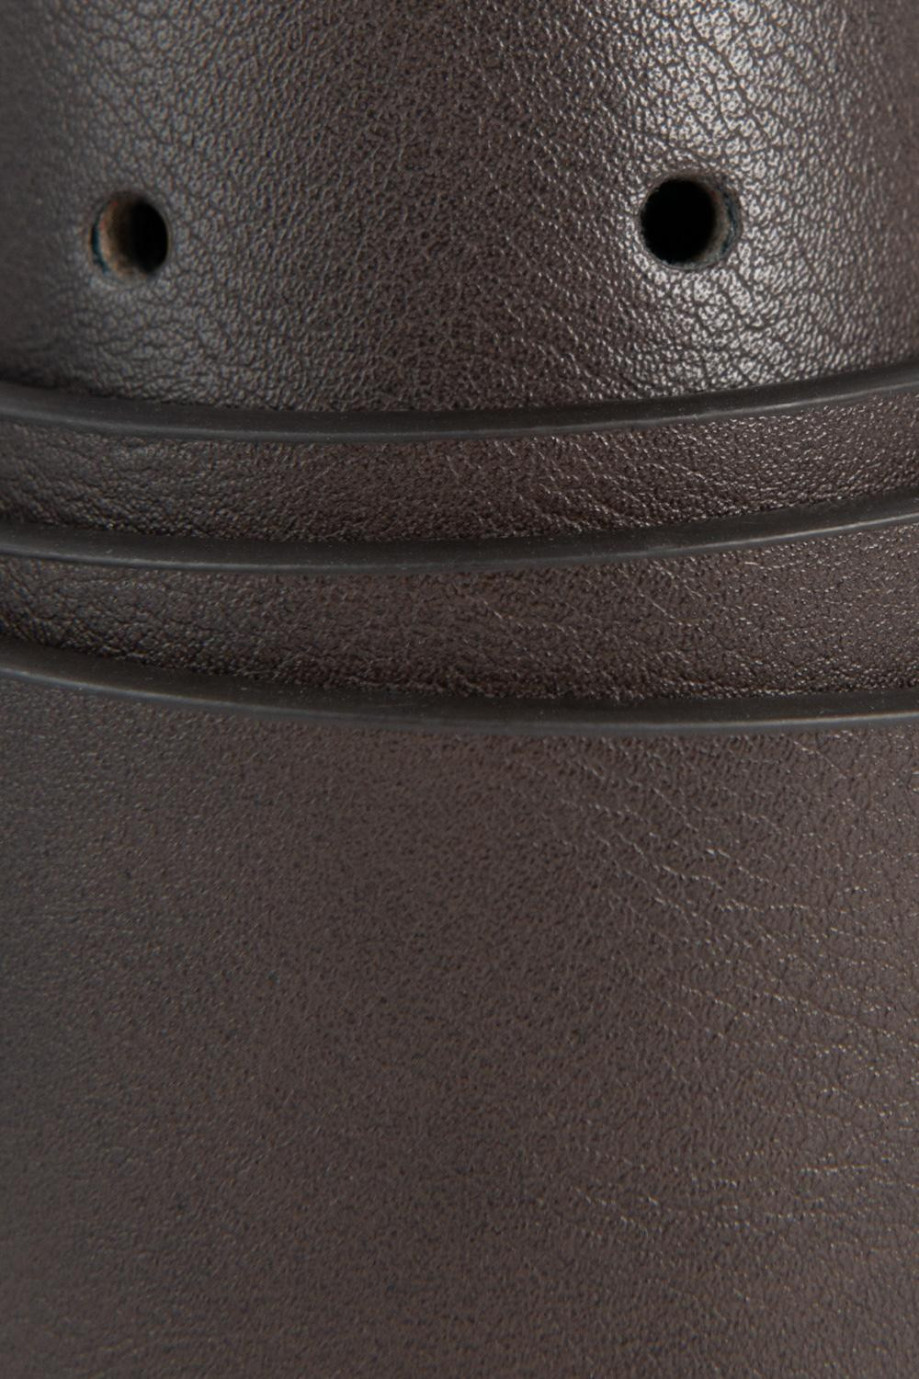 Cinturón sintético café medio con hebilla metálica negra